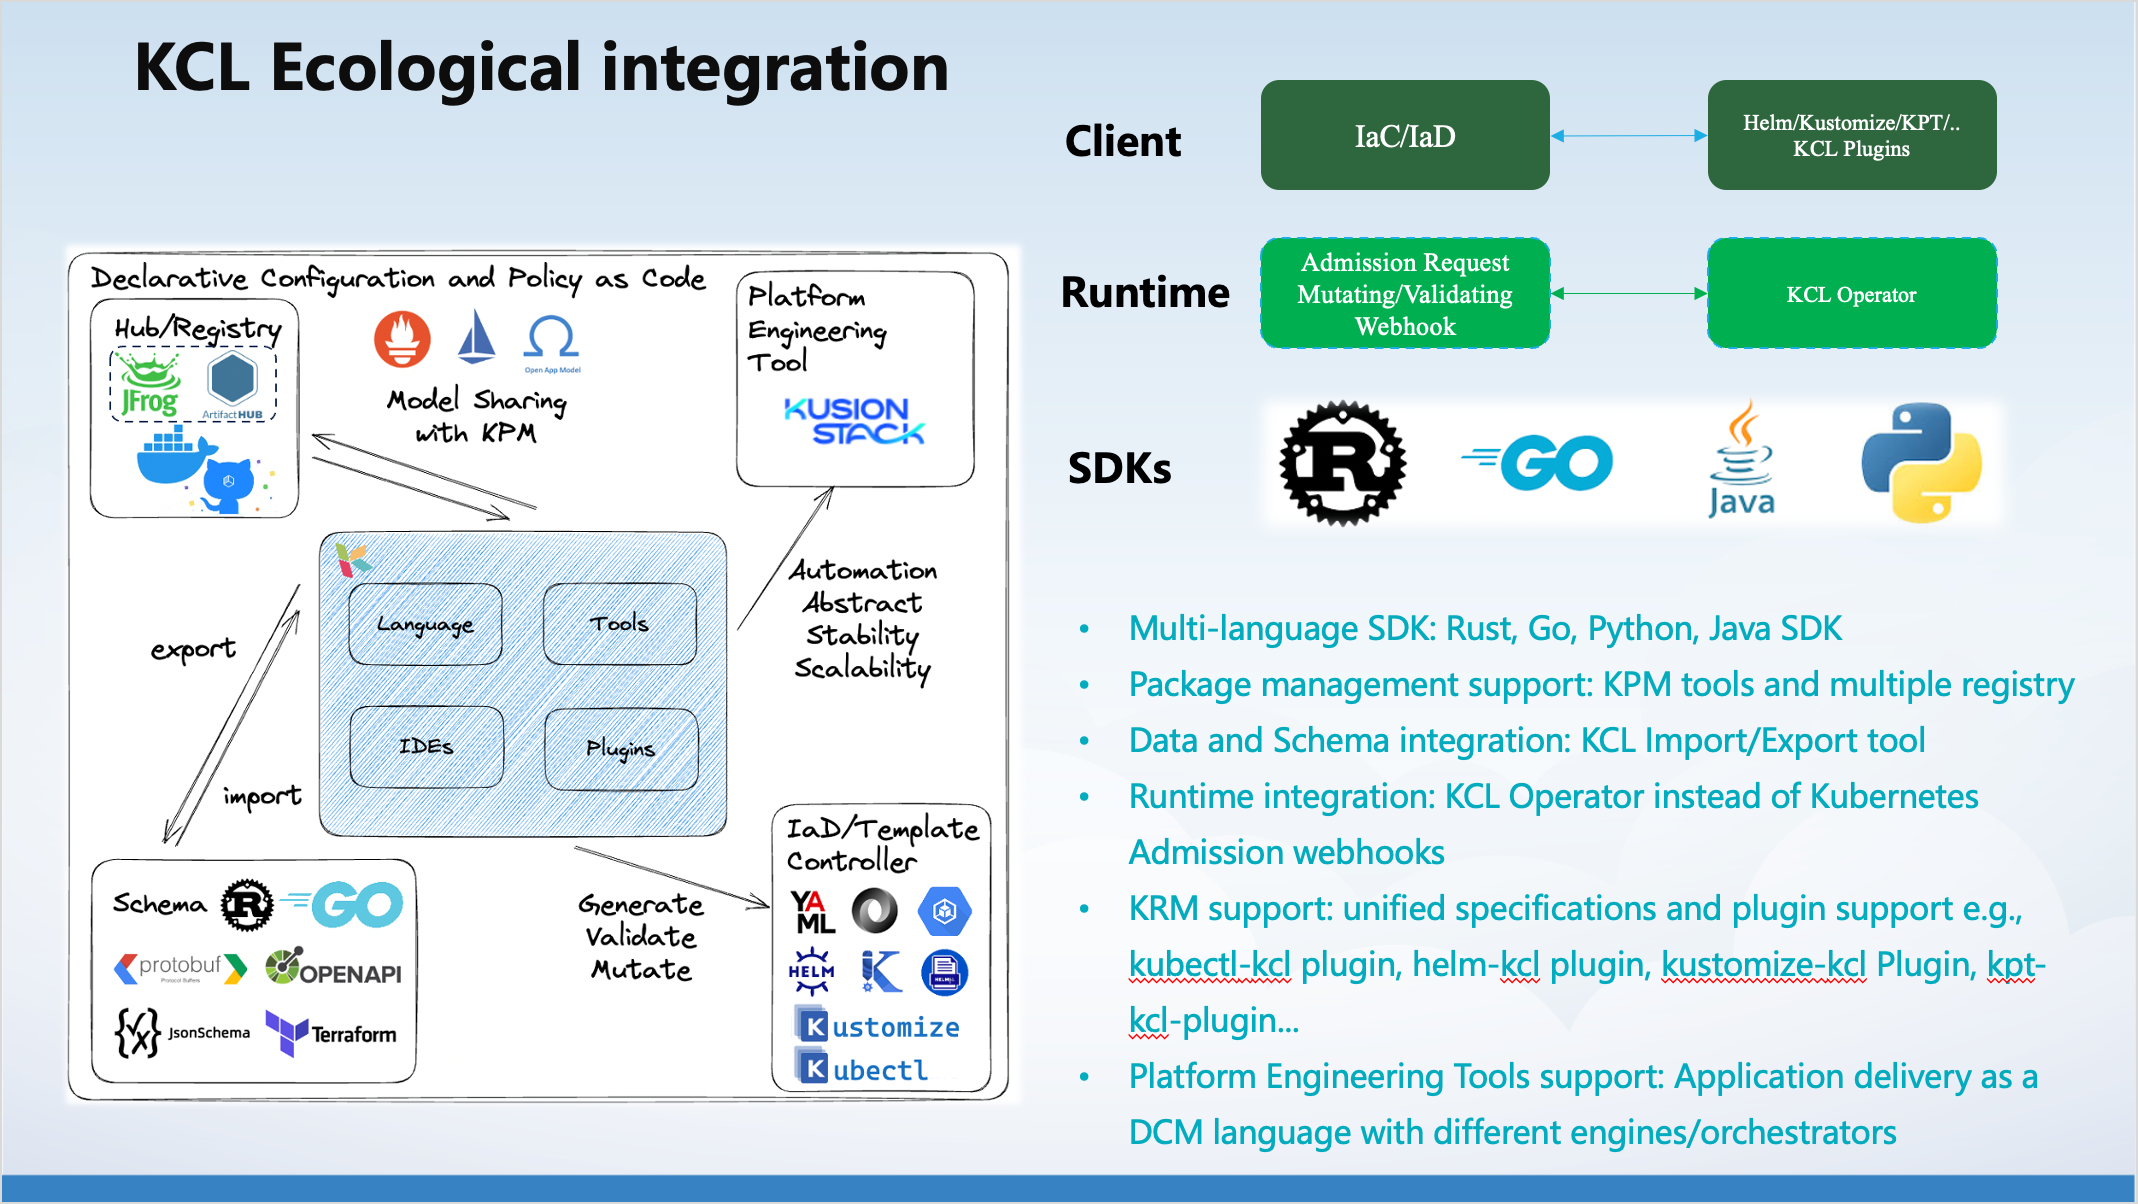 kcl-integration-en.png